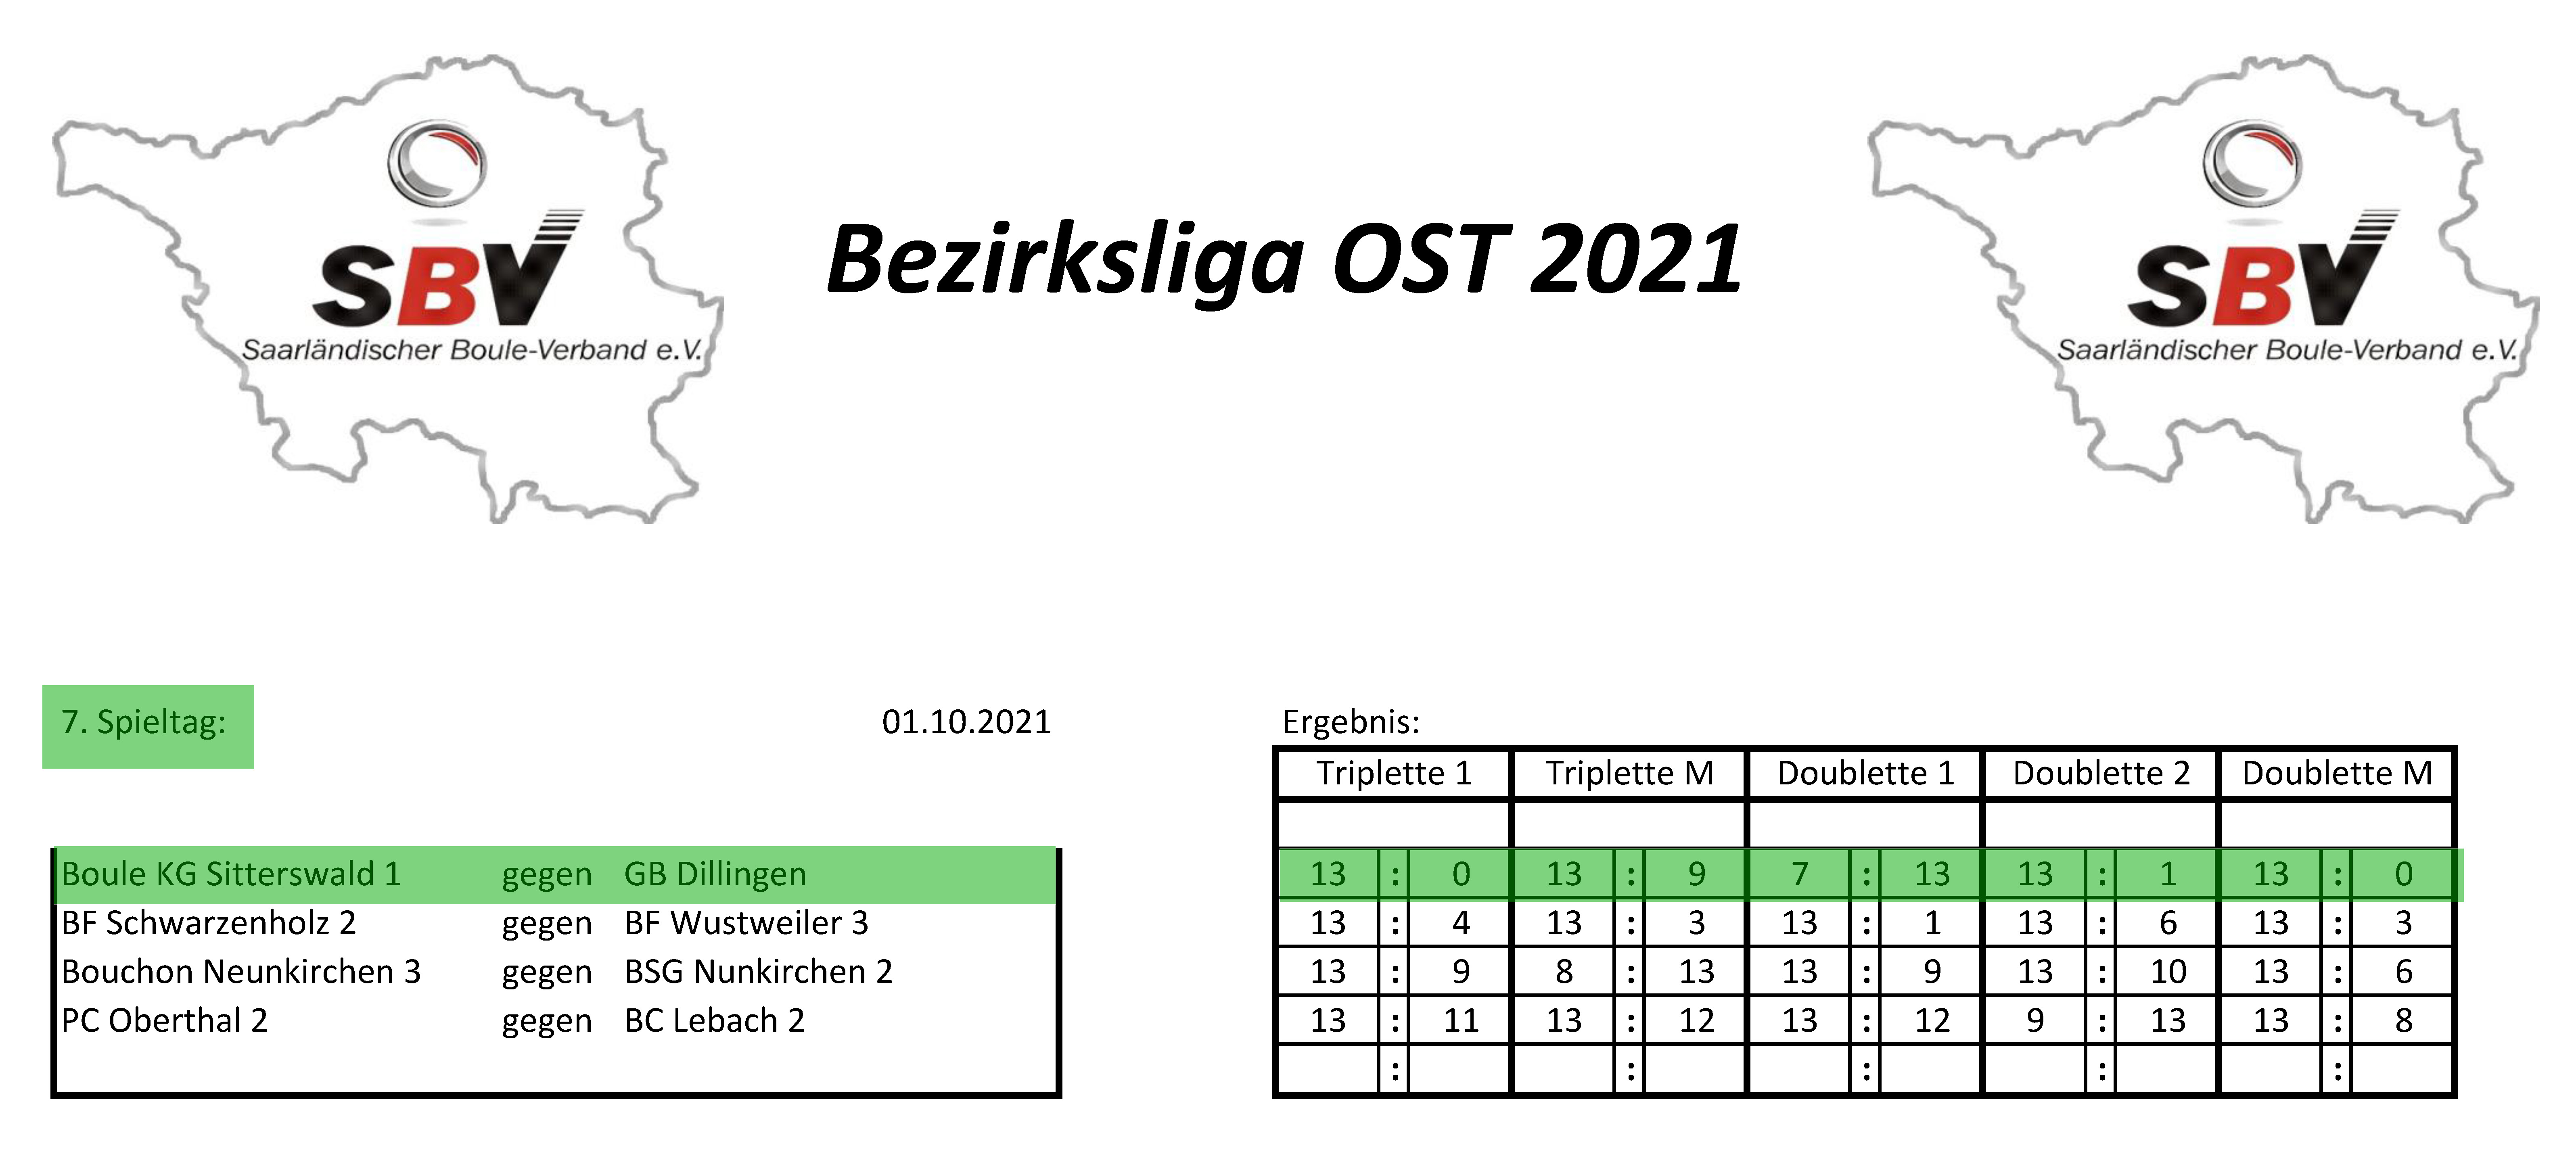 SBV Bezirksliga Ost 2021 Ergebnisse 7 Spieltag